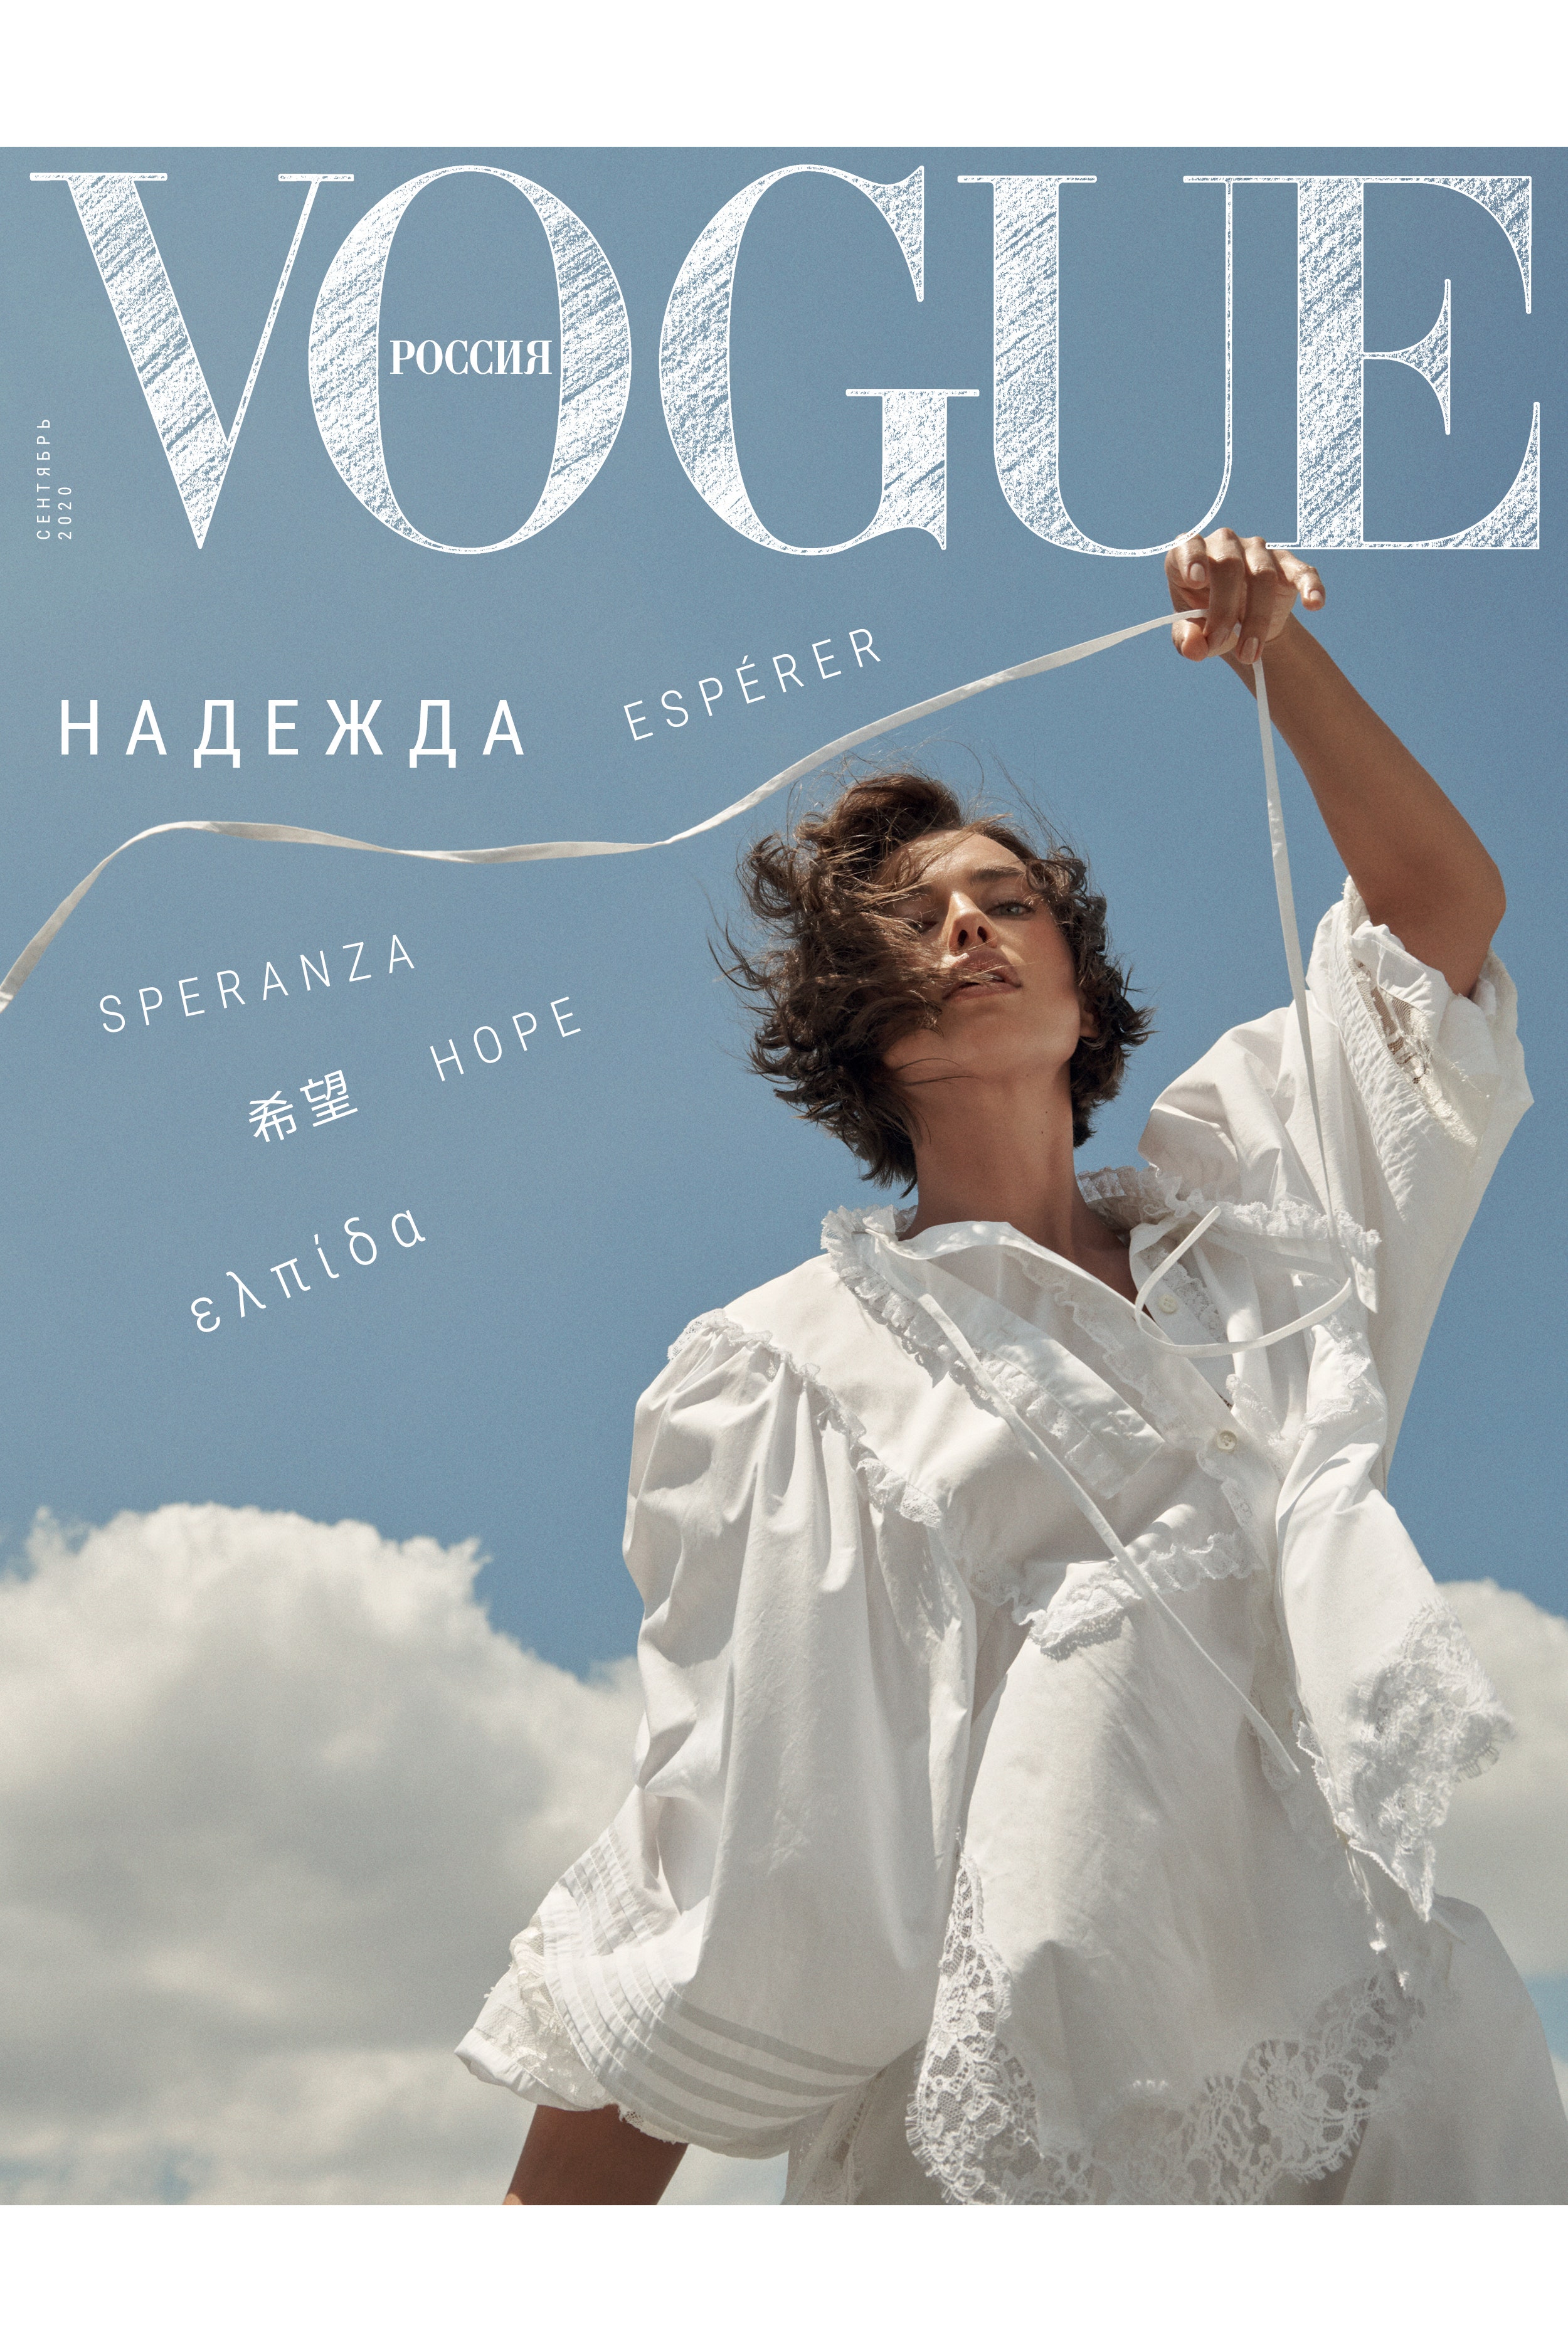 Маша Федорова о надежде и сентябрьском Vogue Россия